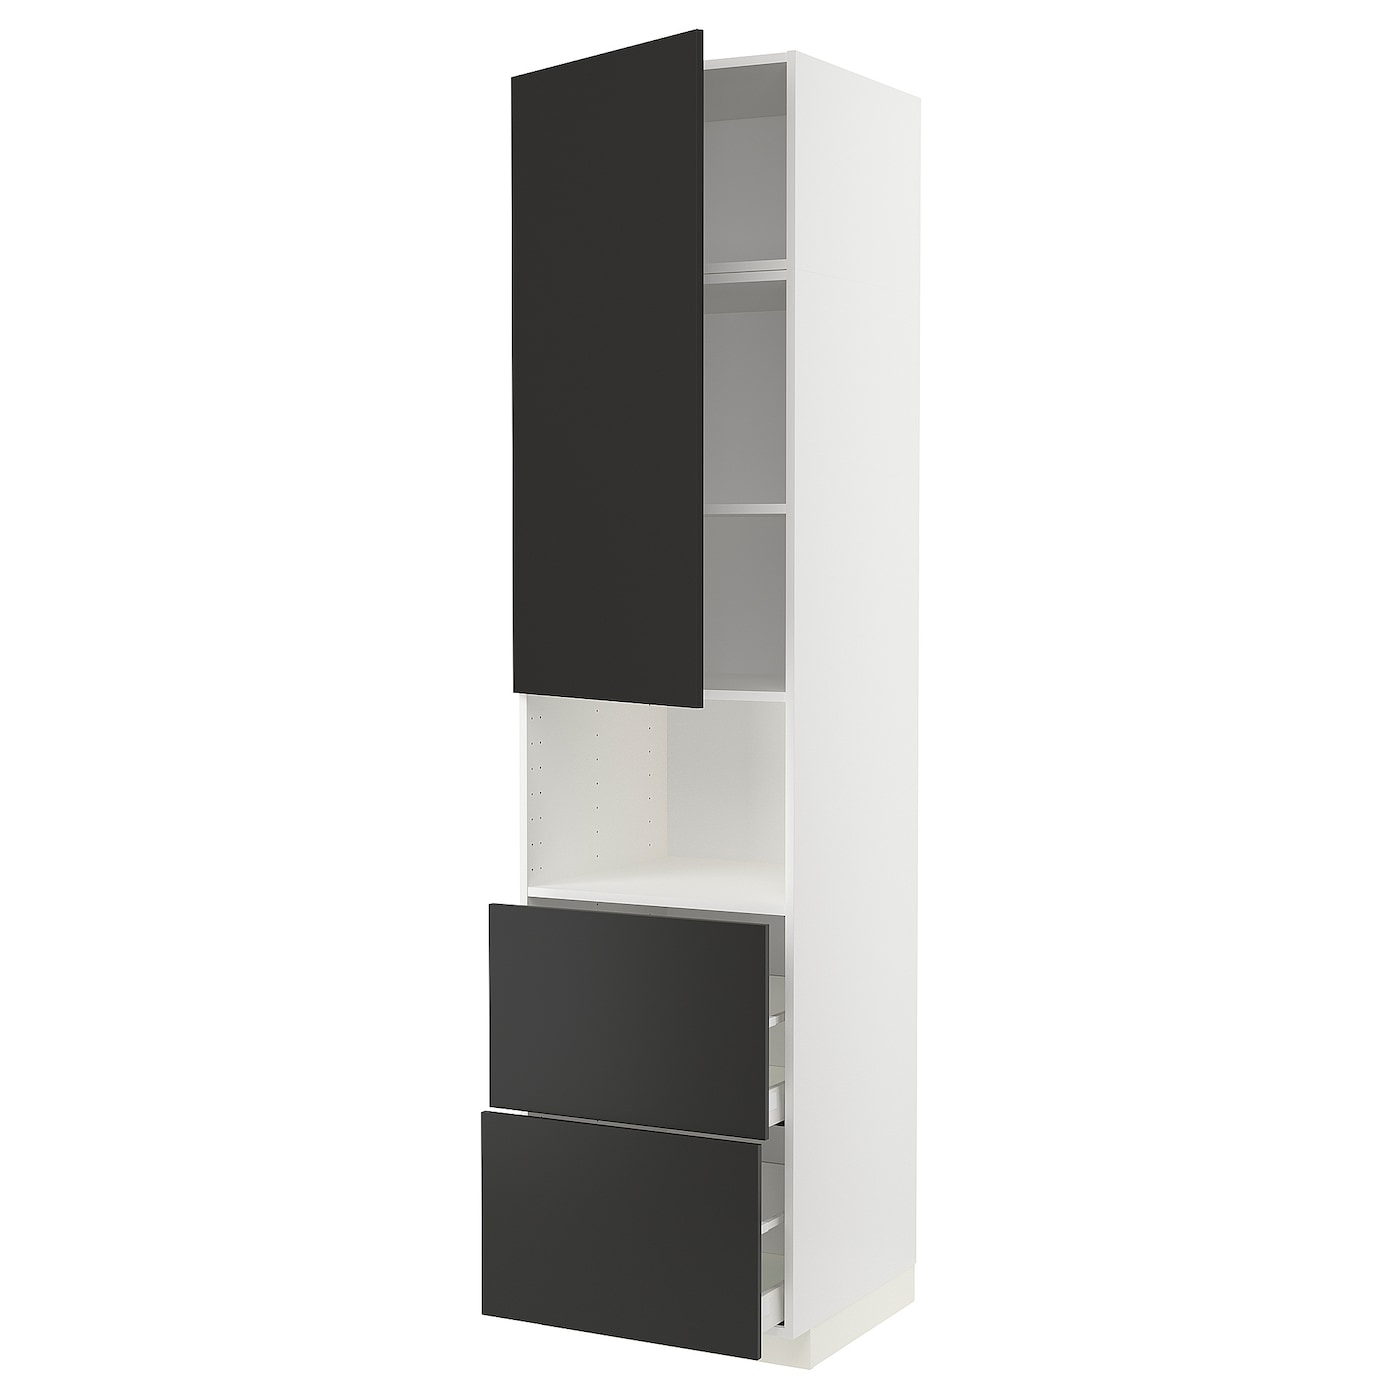 Модульный шкаф - METOD / MAXIMERA IKEA/ МЕТОД/МАКСИМЕРА  ИКЕА, 248х60 см, черный/белый